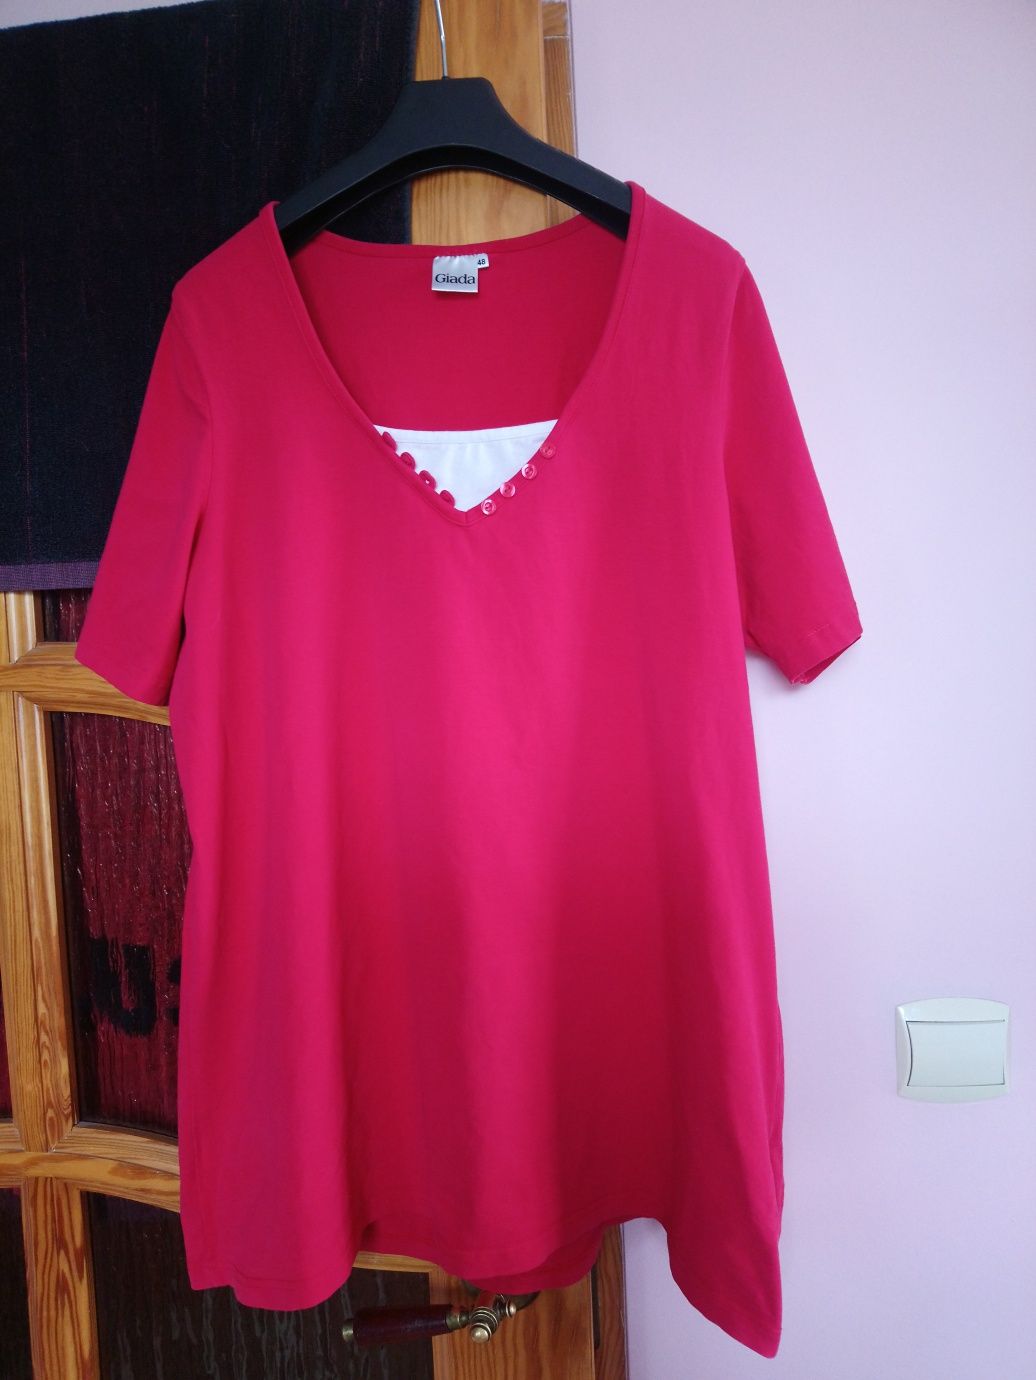 Czerwona koszulka rozmiar 46-48, firmy Giada.